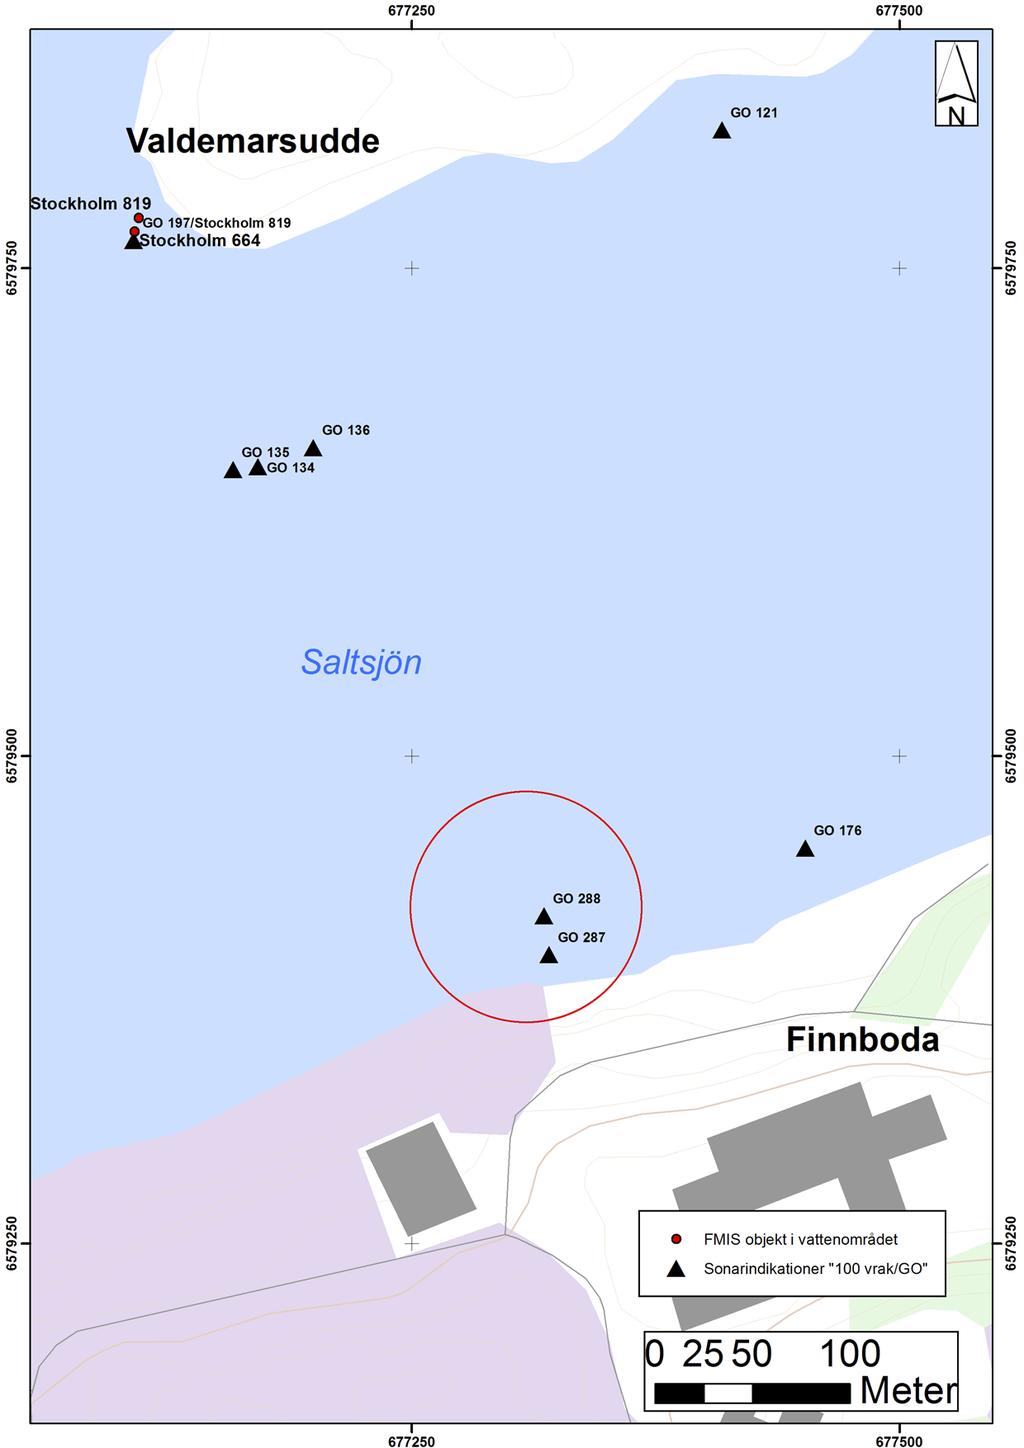 Figur 1. Kartan visar de FMIS-objekt och sonarindikationer (GO) som var kända före utredningen.